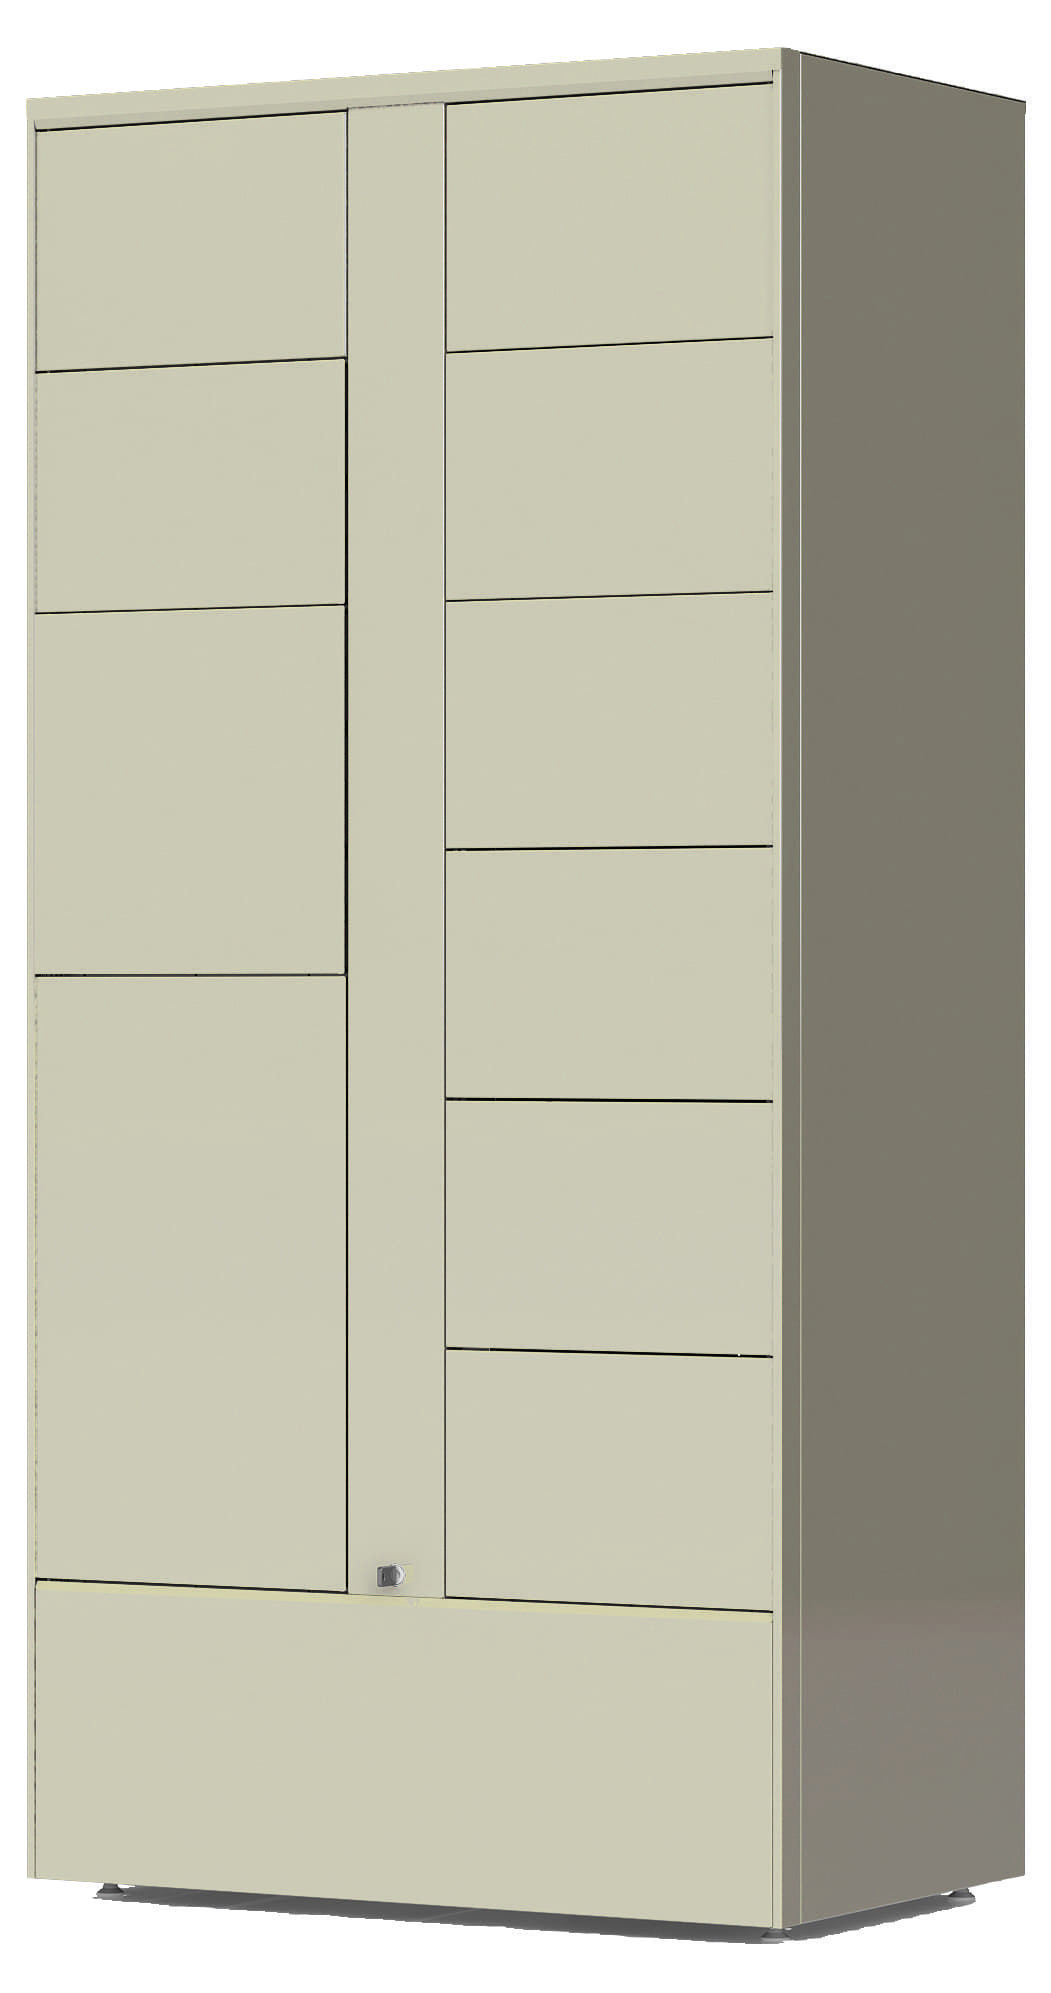 indoor element series locker module